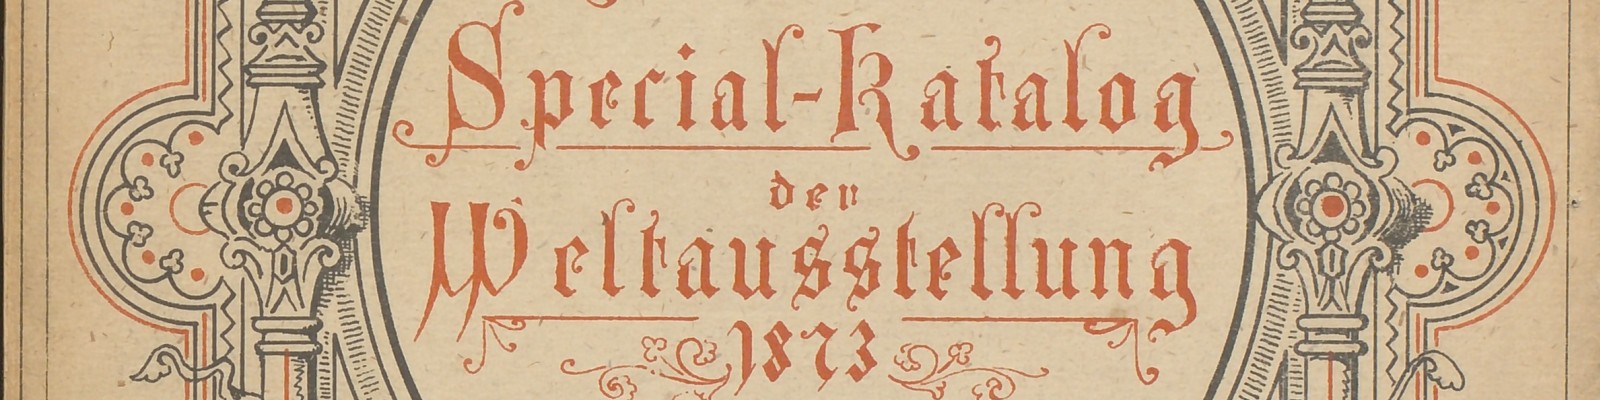 Norwegischer Spezial-Katalog der Weltausstellung 1873 in Wien